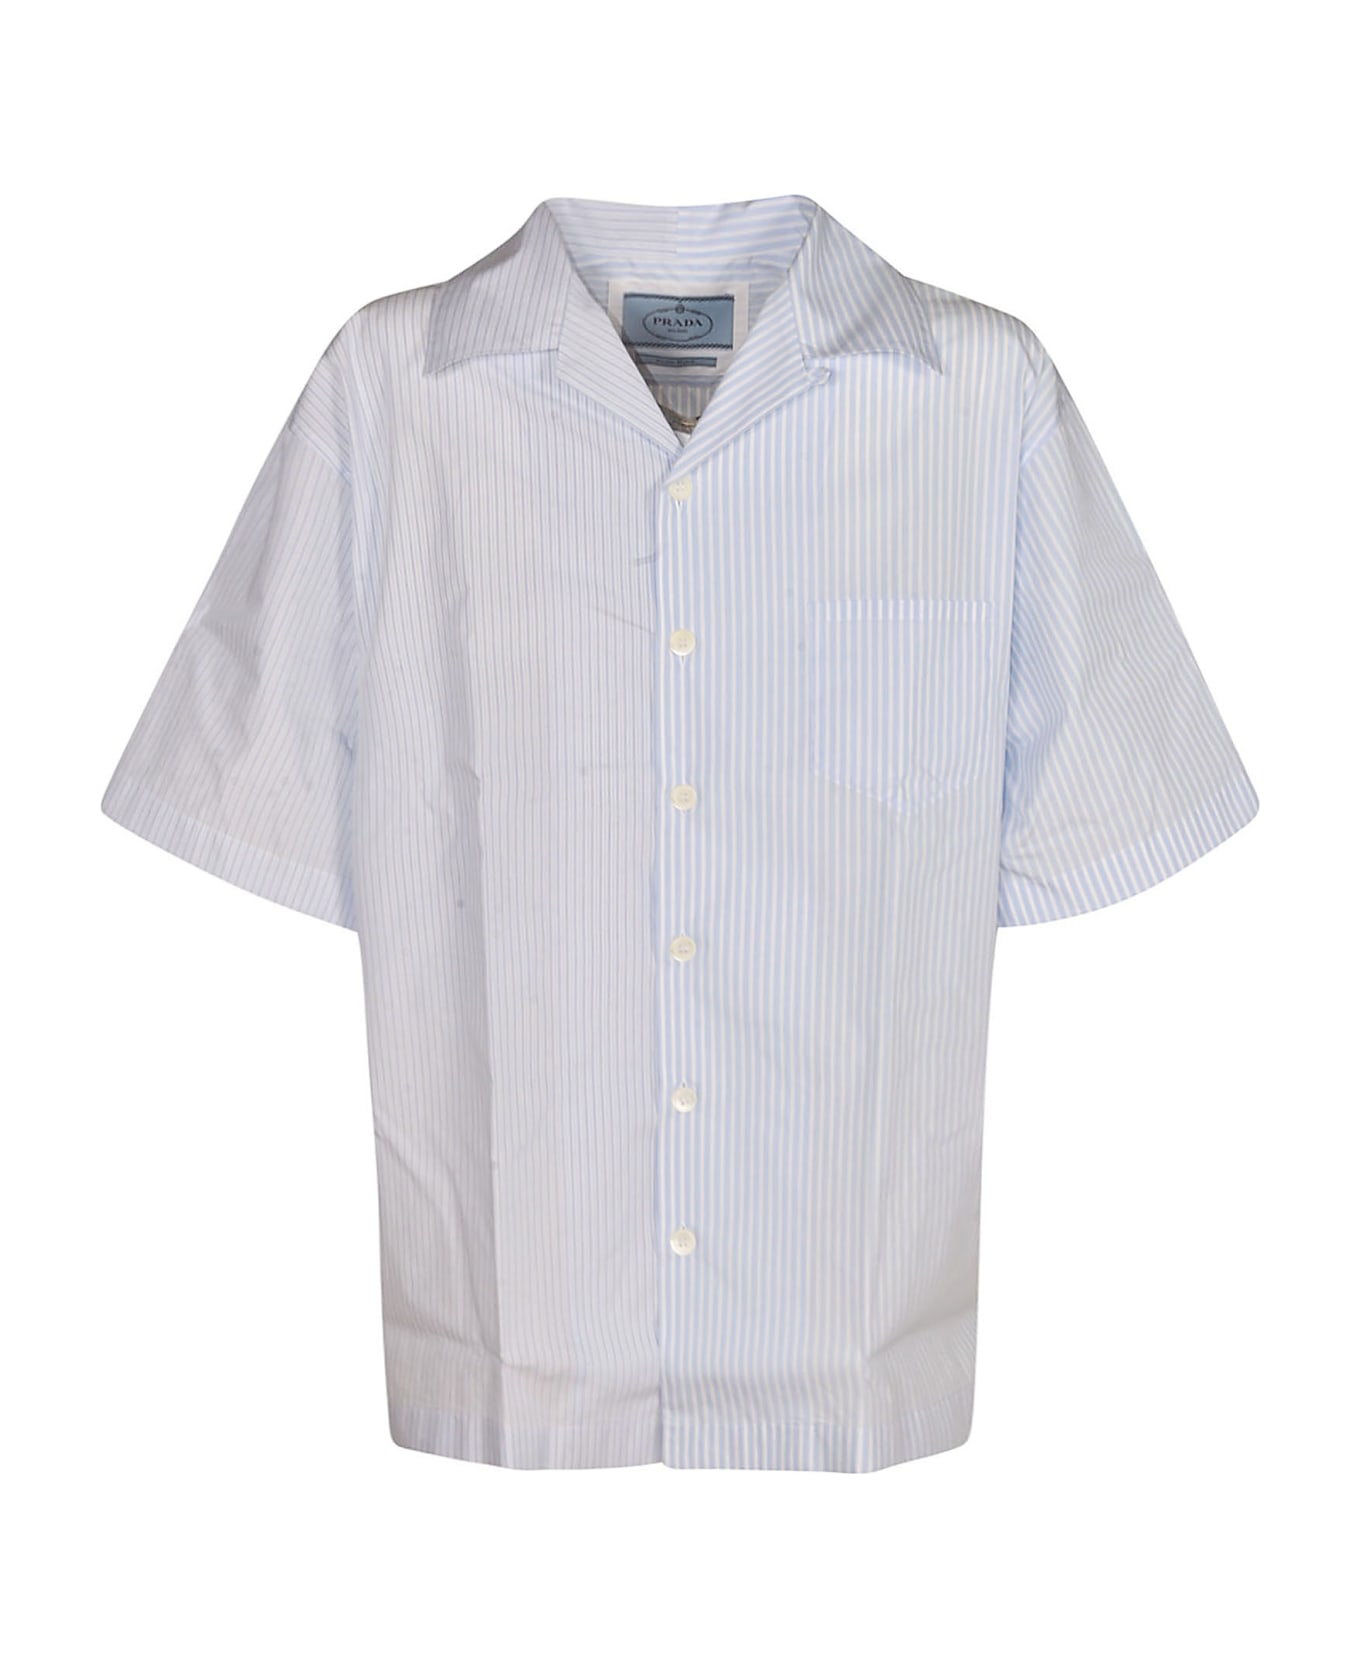 Prada Striped Short-sleeved Button Up Shirt - White/Sky Blue